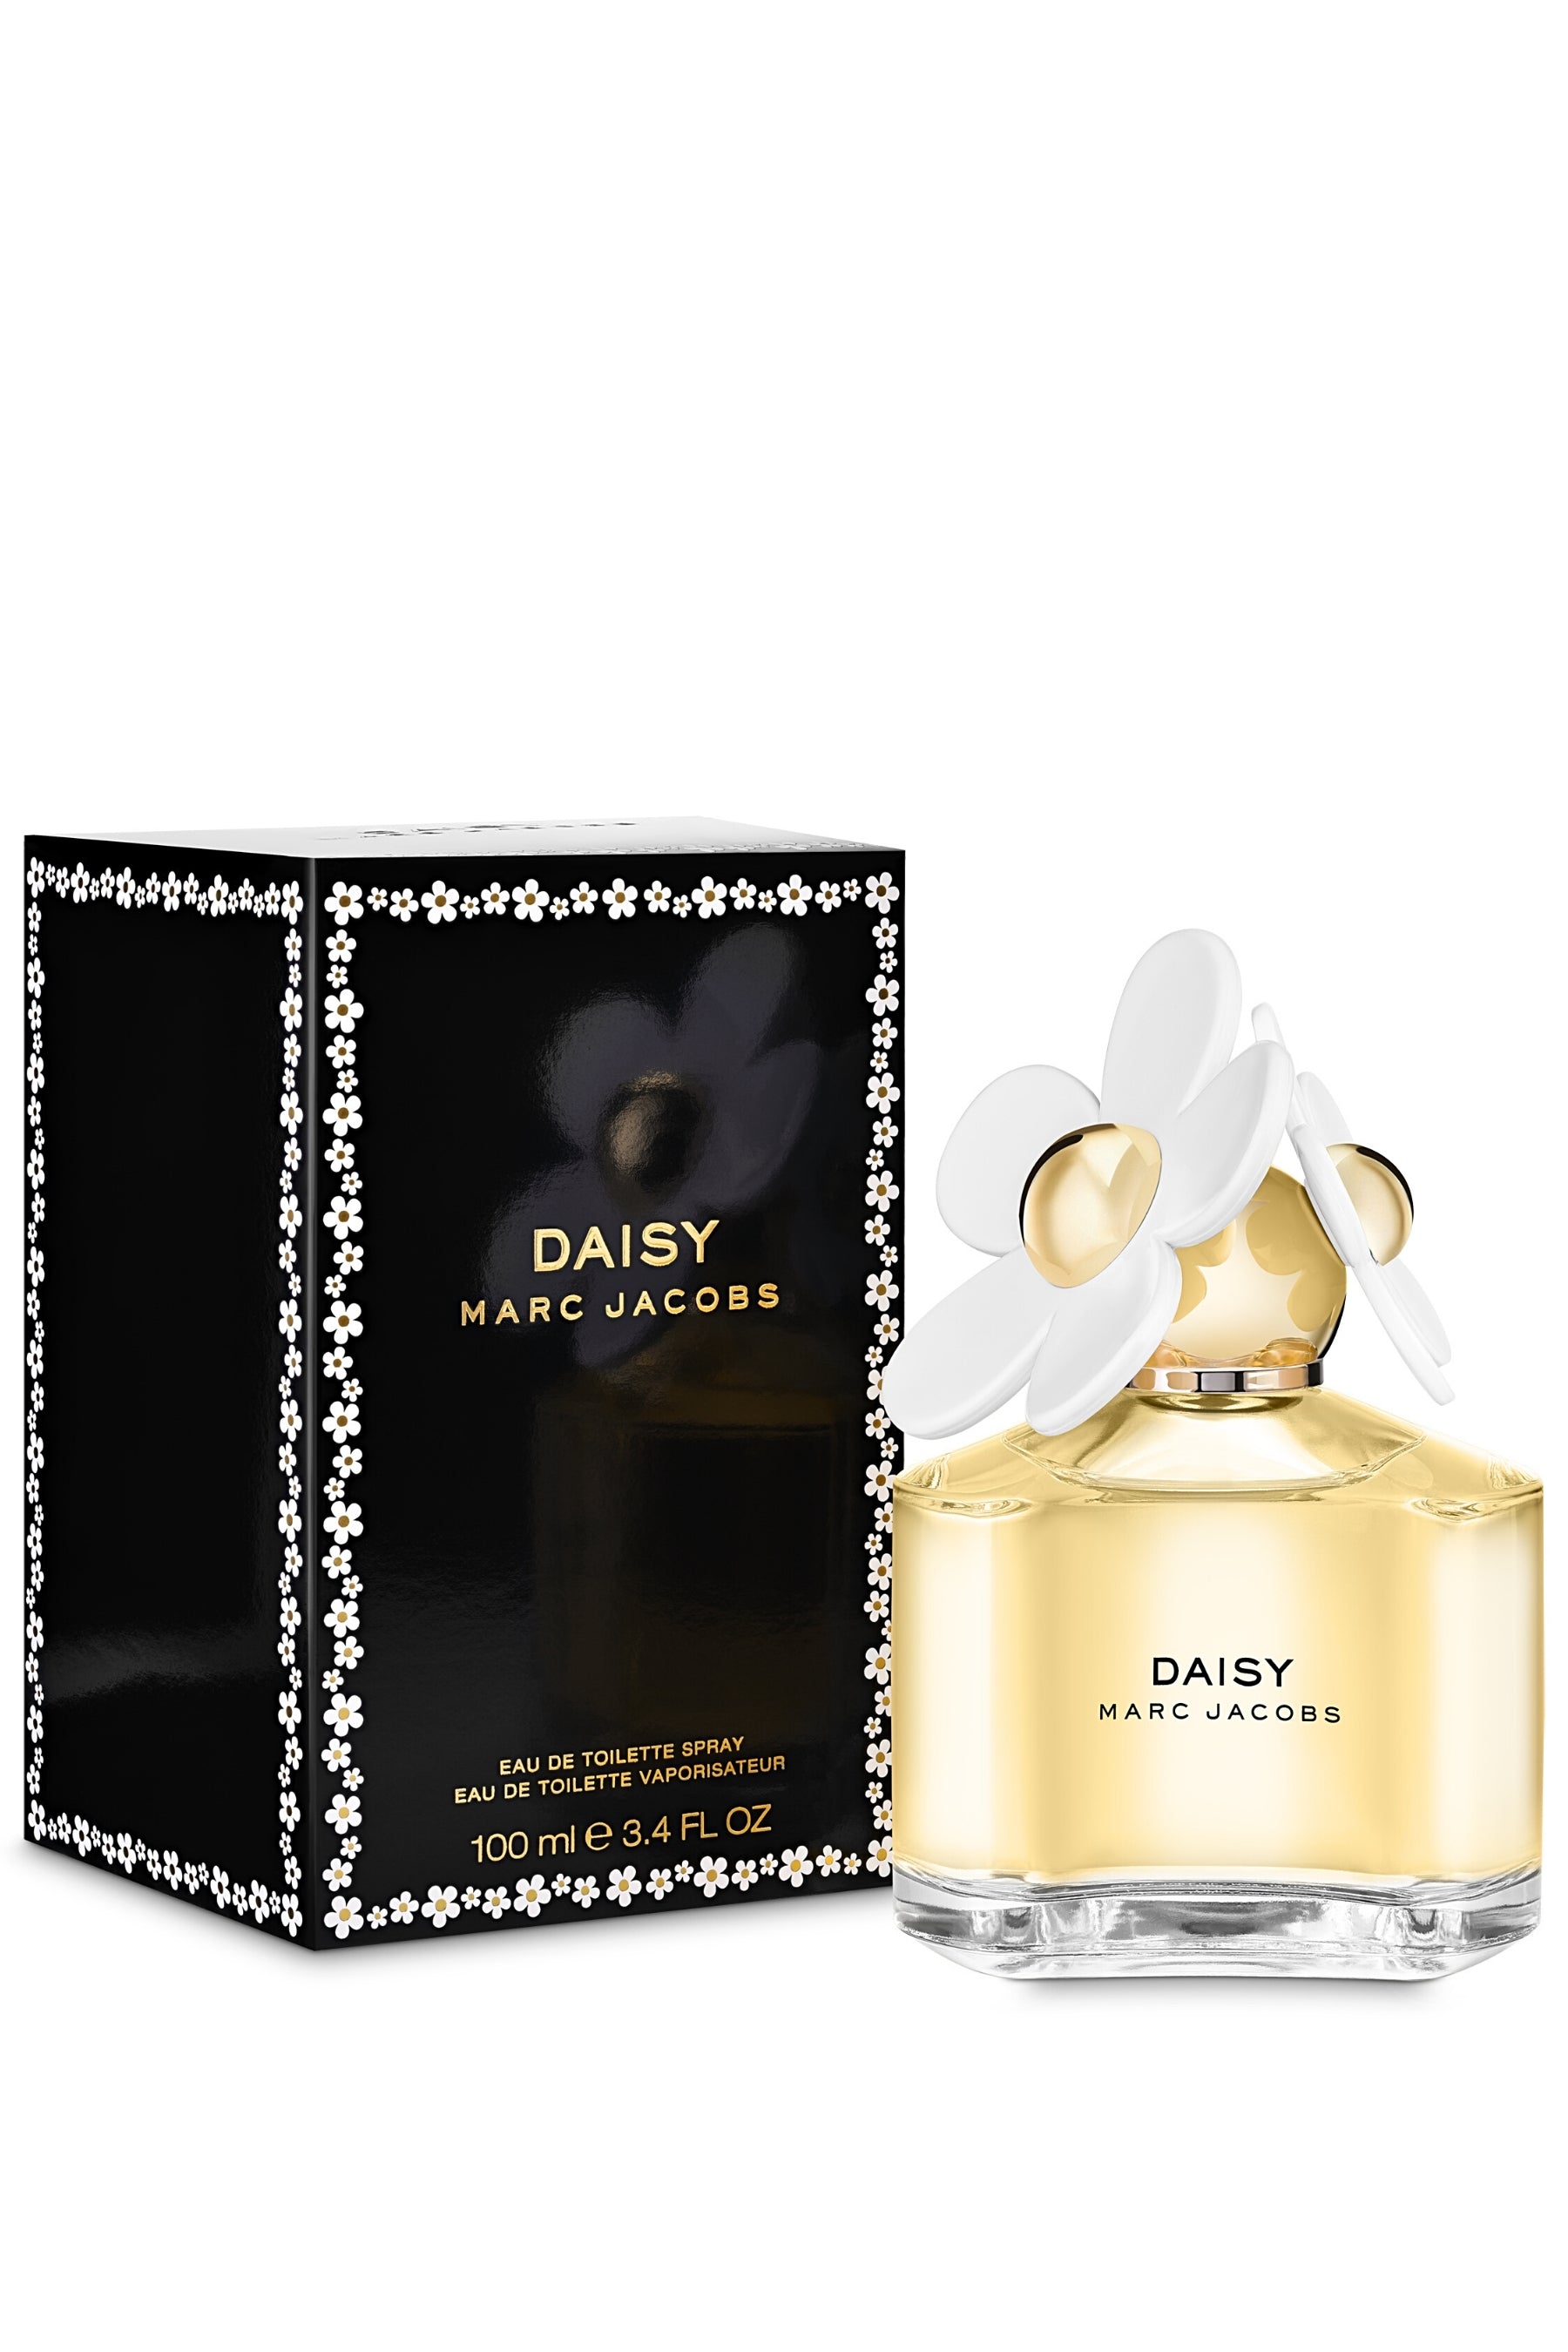 Marc Jacobs Daisy Eau de Toilette Spray - 1.7 oz.